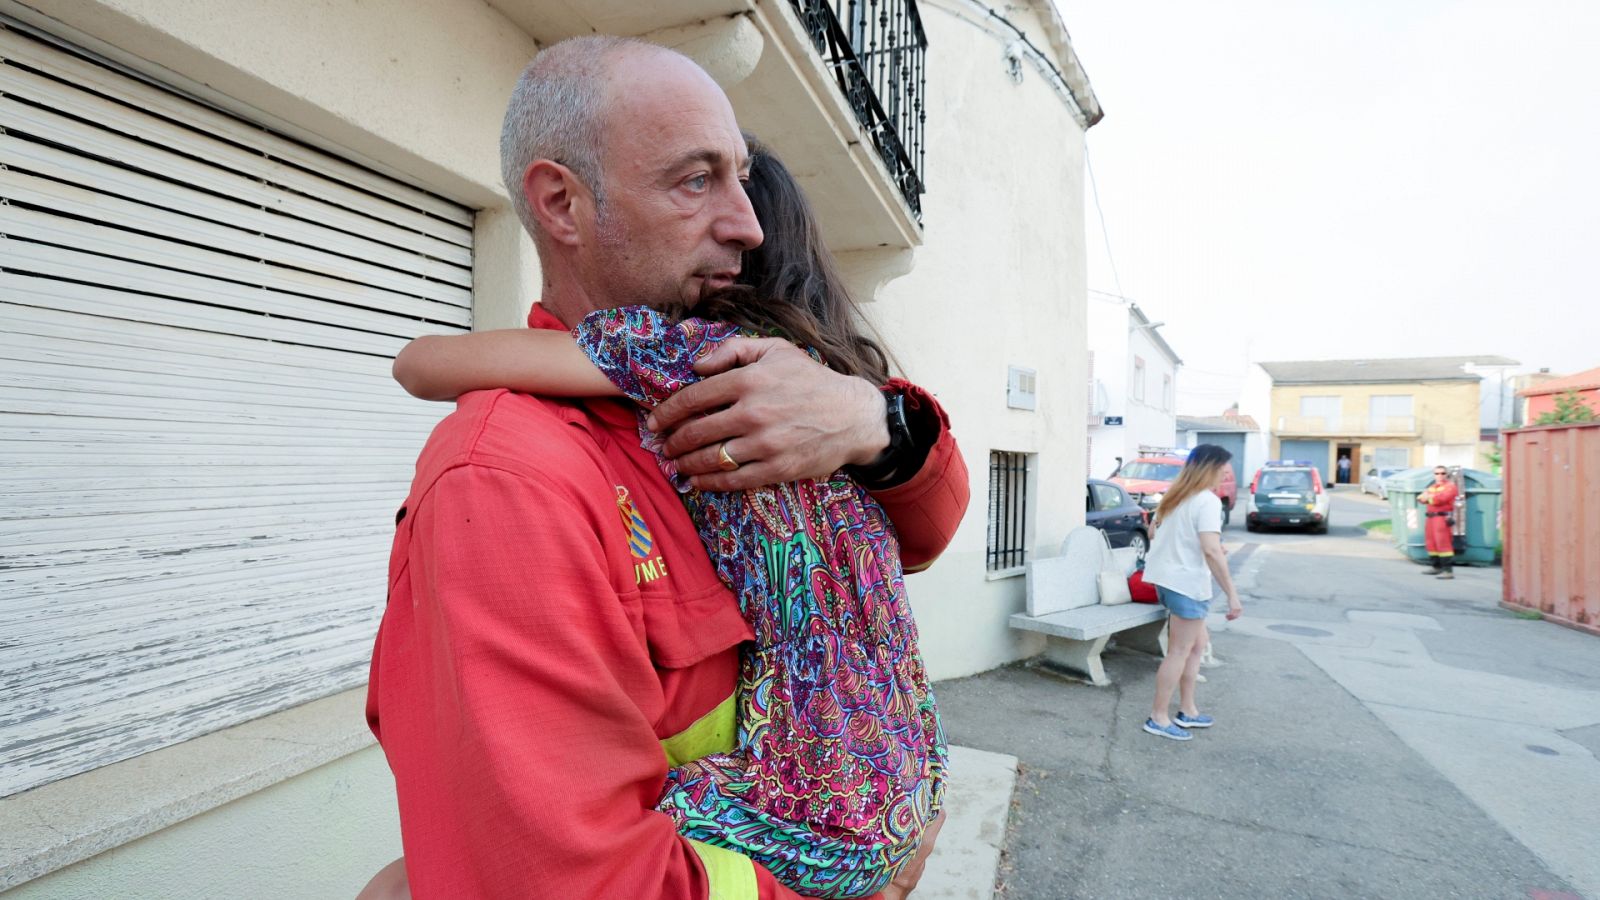 Un vecino sostiene una niña en brazos en Morasverdes (Salamanca)